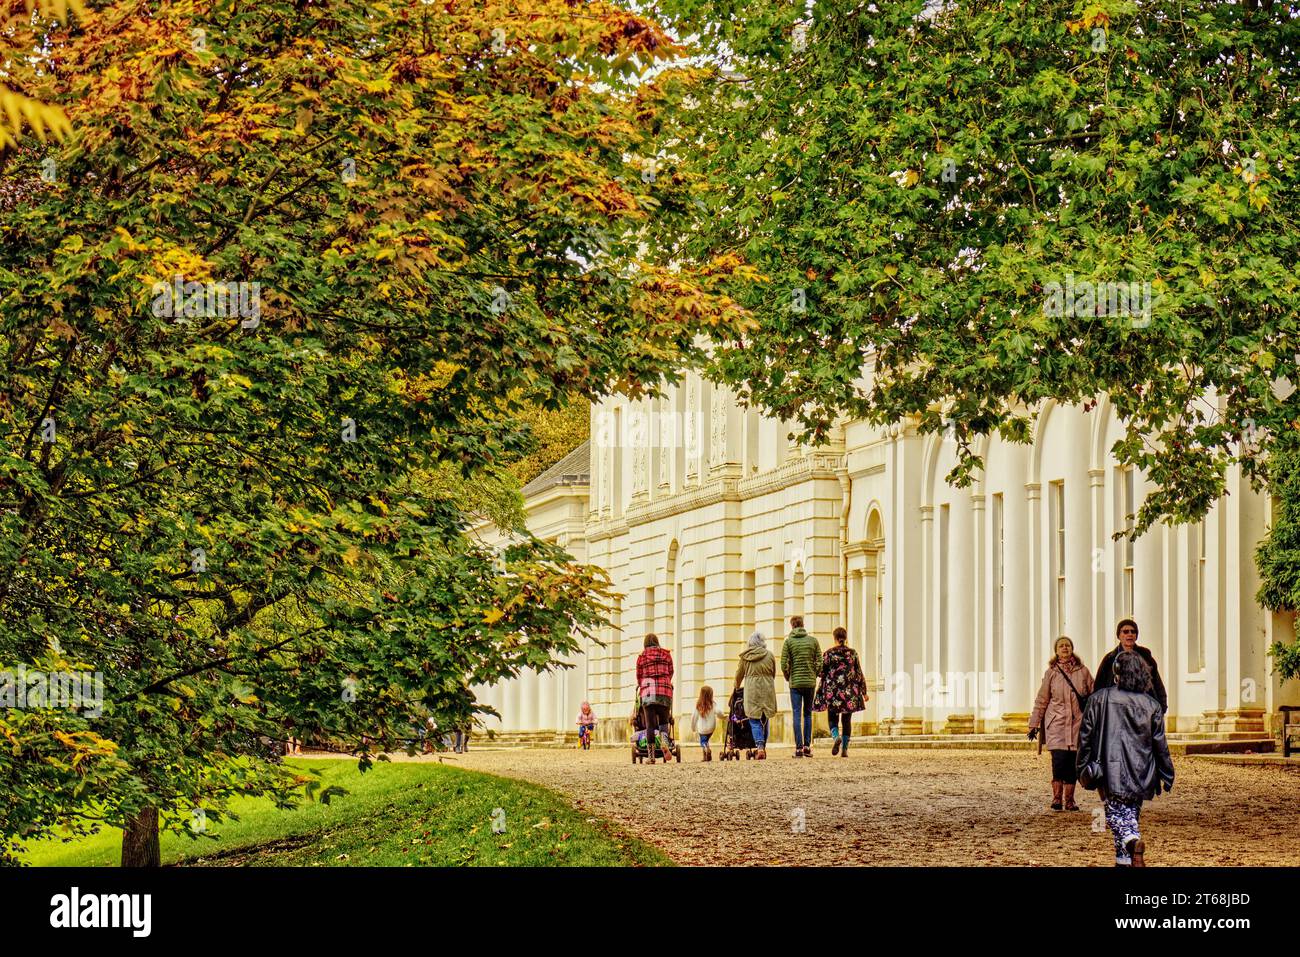 Hampstead, Londres, Angleterre, Royaume-Uni - les gens visitent Kenwood House, une maison seigneuriale sur le bord de Hampstead Heath en automne. Banque D'Images